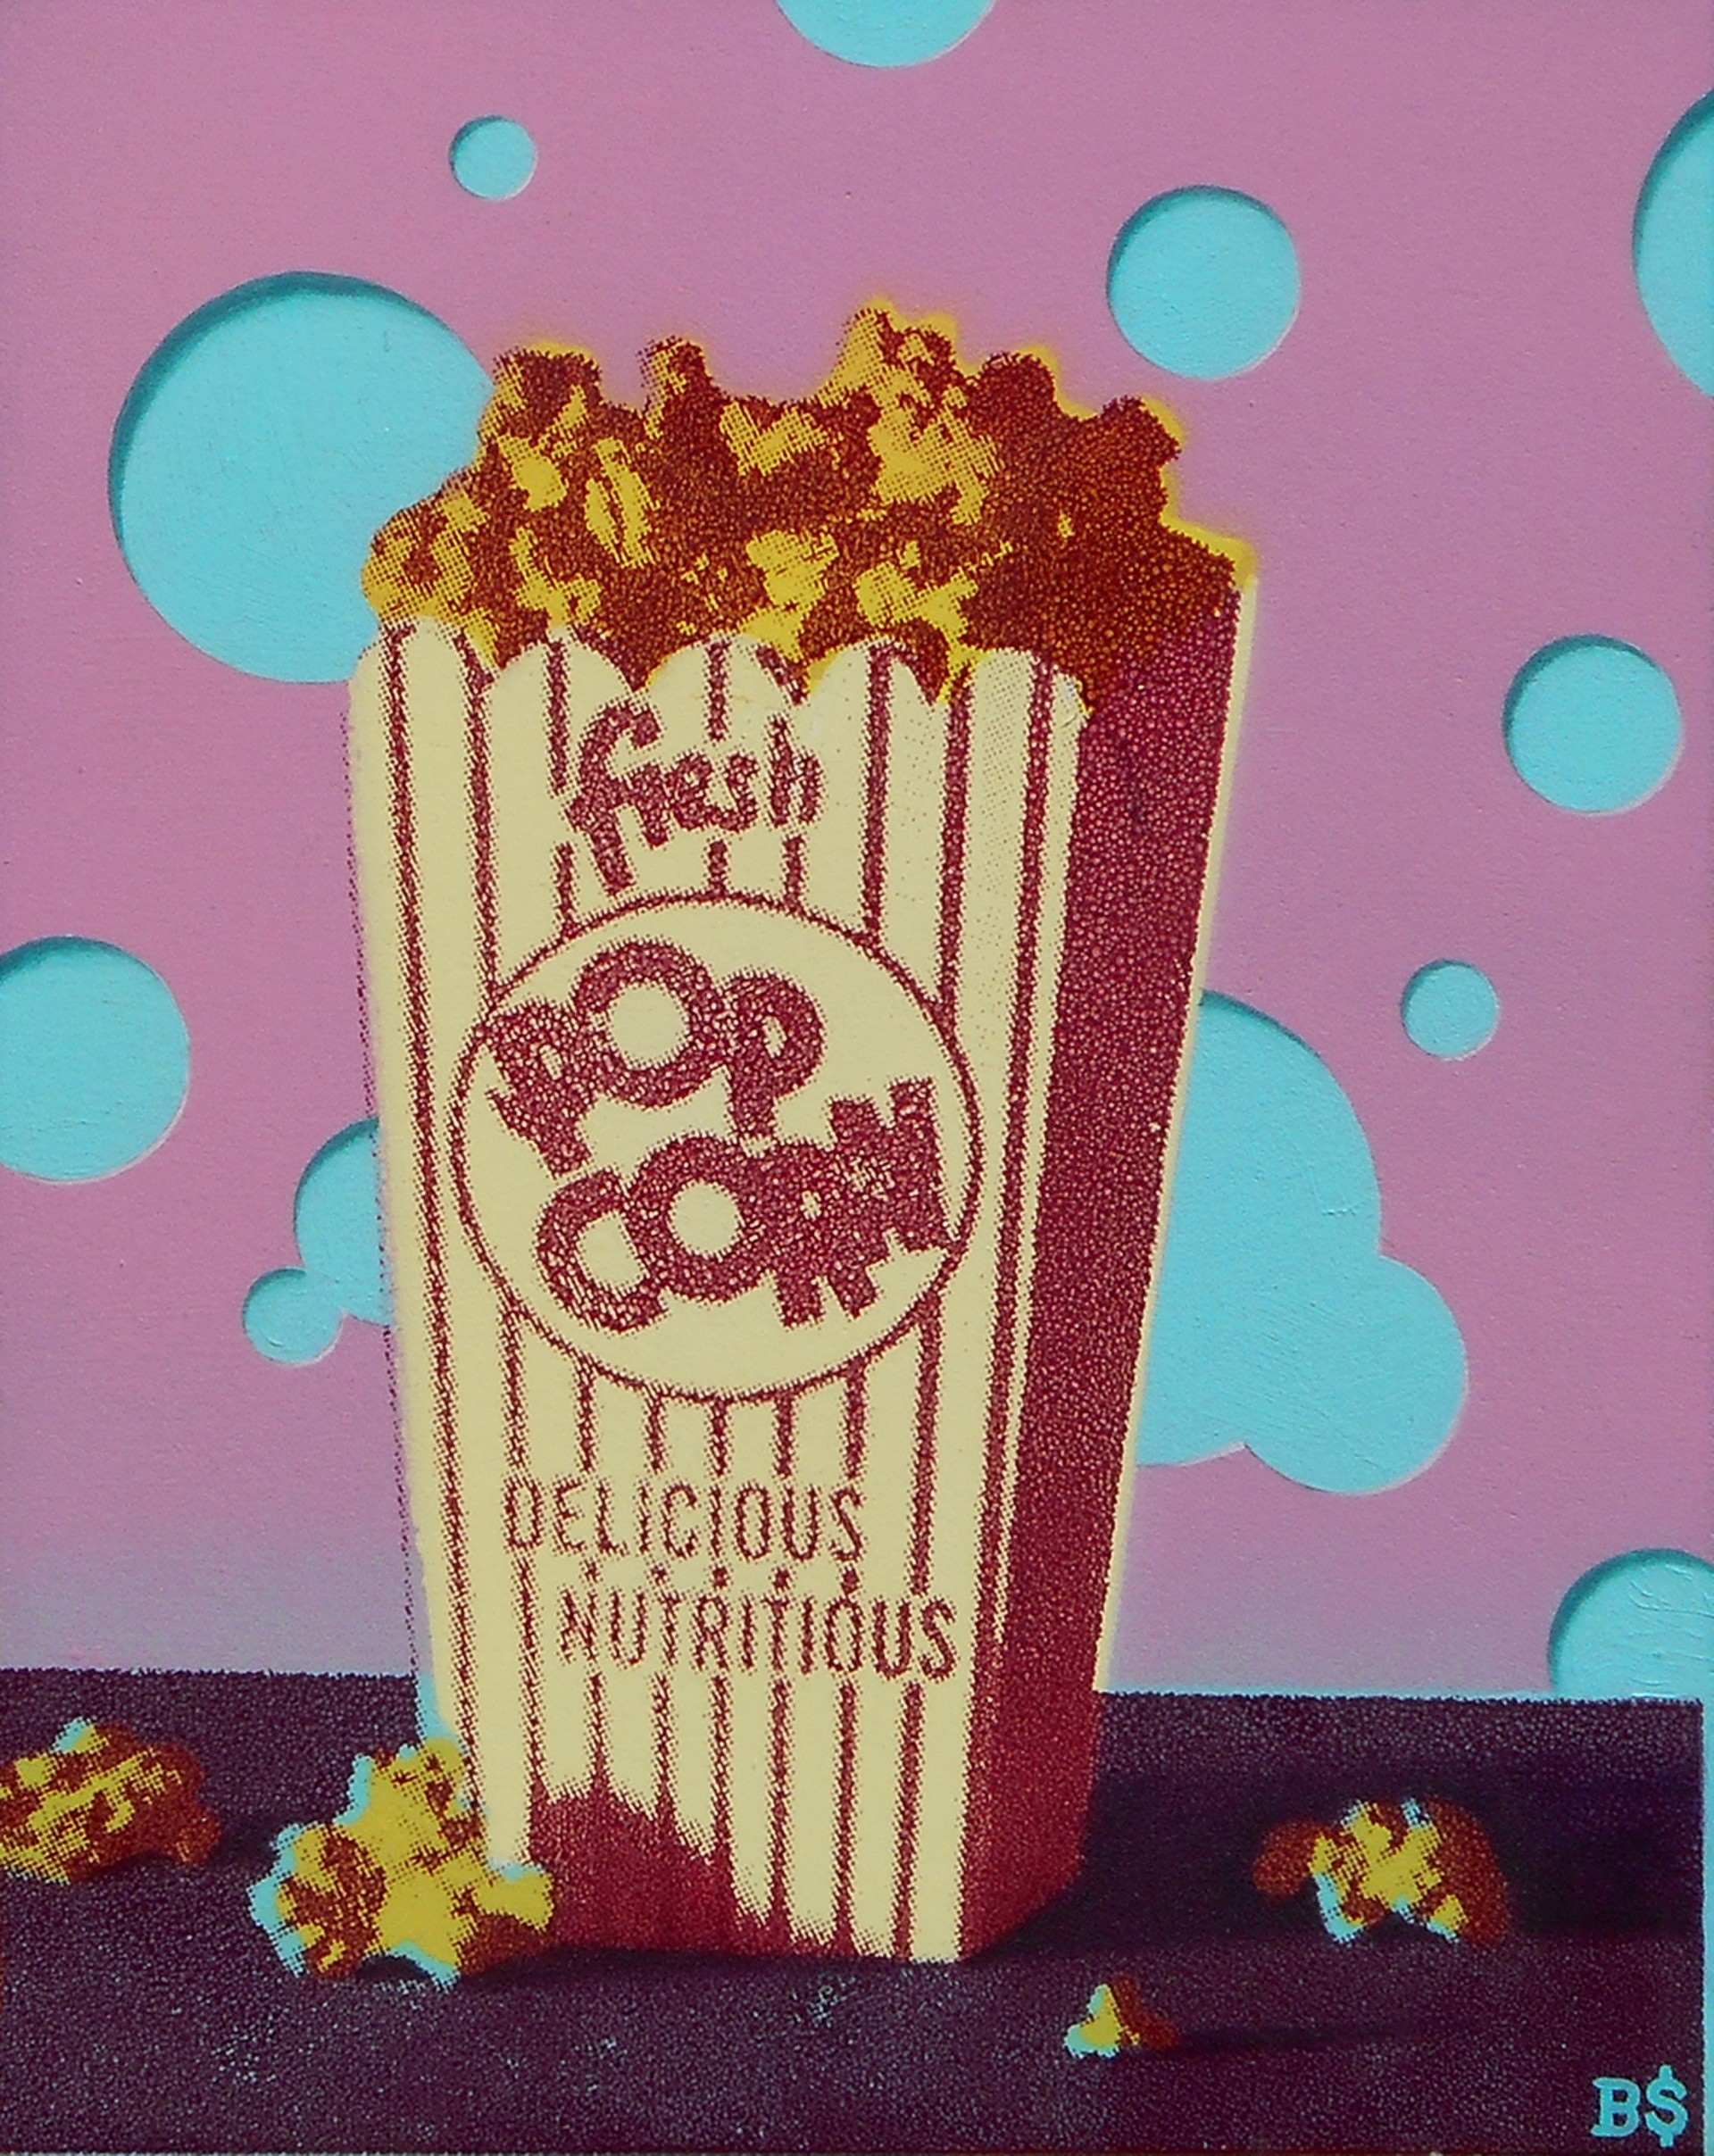 Popcorn: Burst by Ben Steele